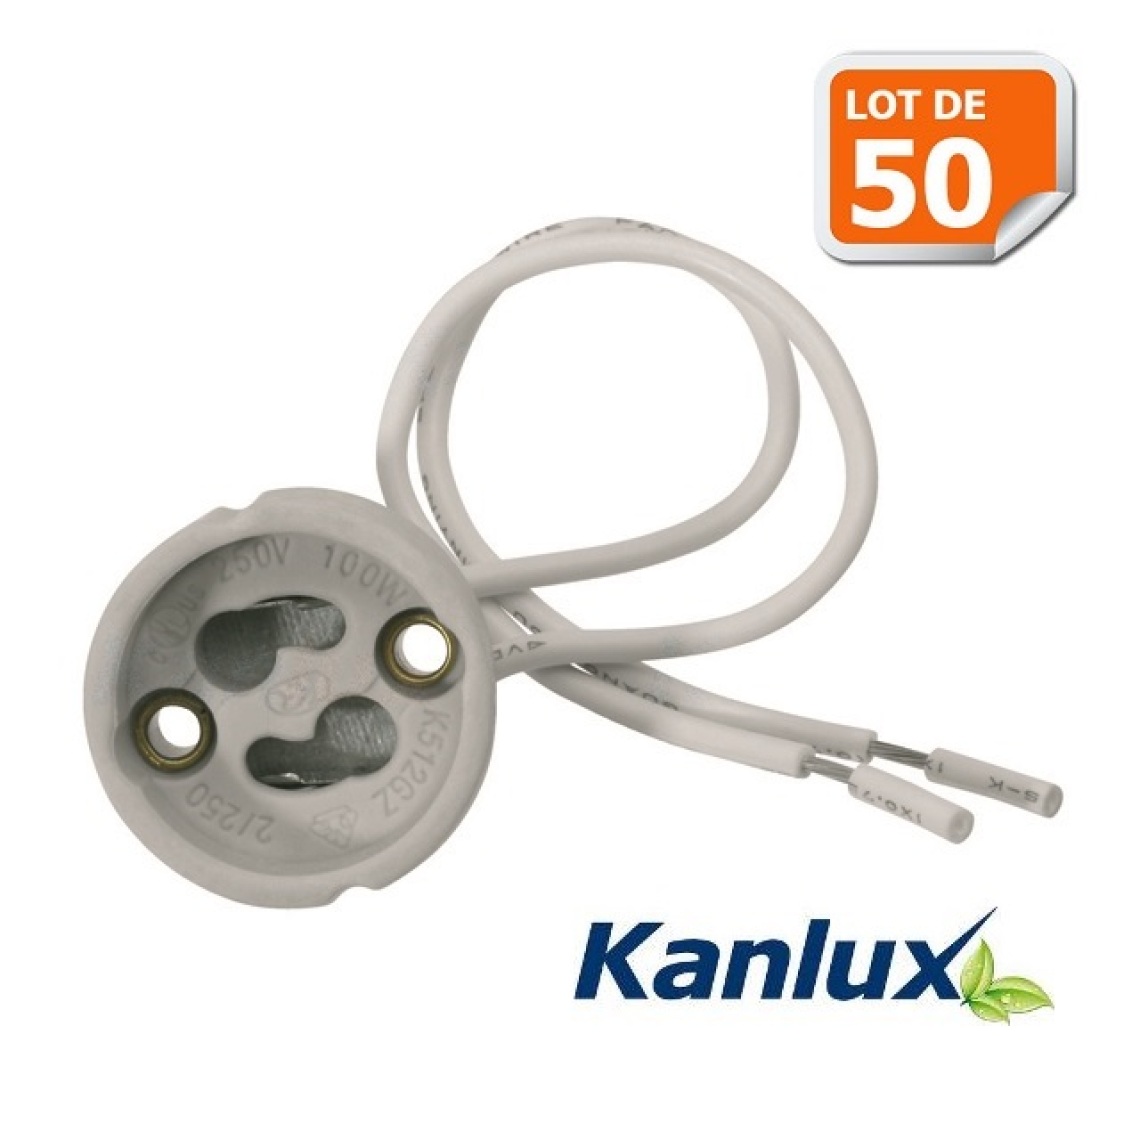 Kanlux - Lot de 50 Douilles Culot GU10 pour Ampoule Halogène ou Led Marque Kanlux ref 402 - Boîtes d'encastrement